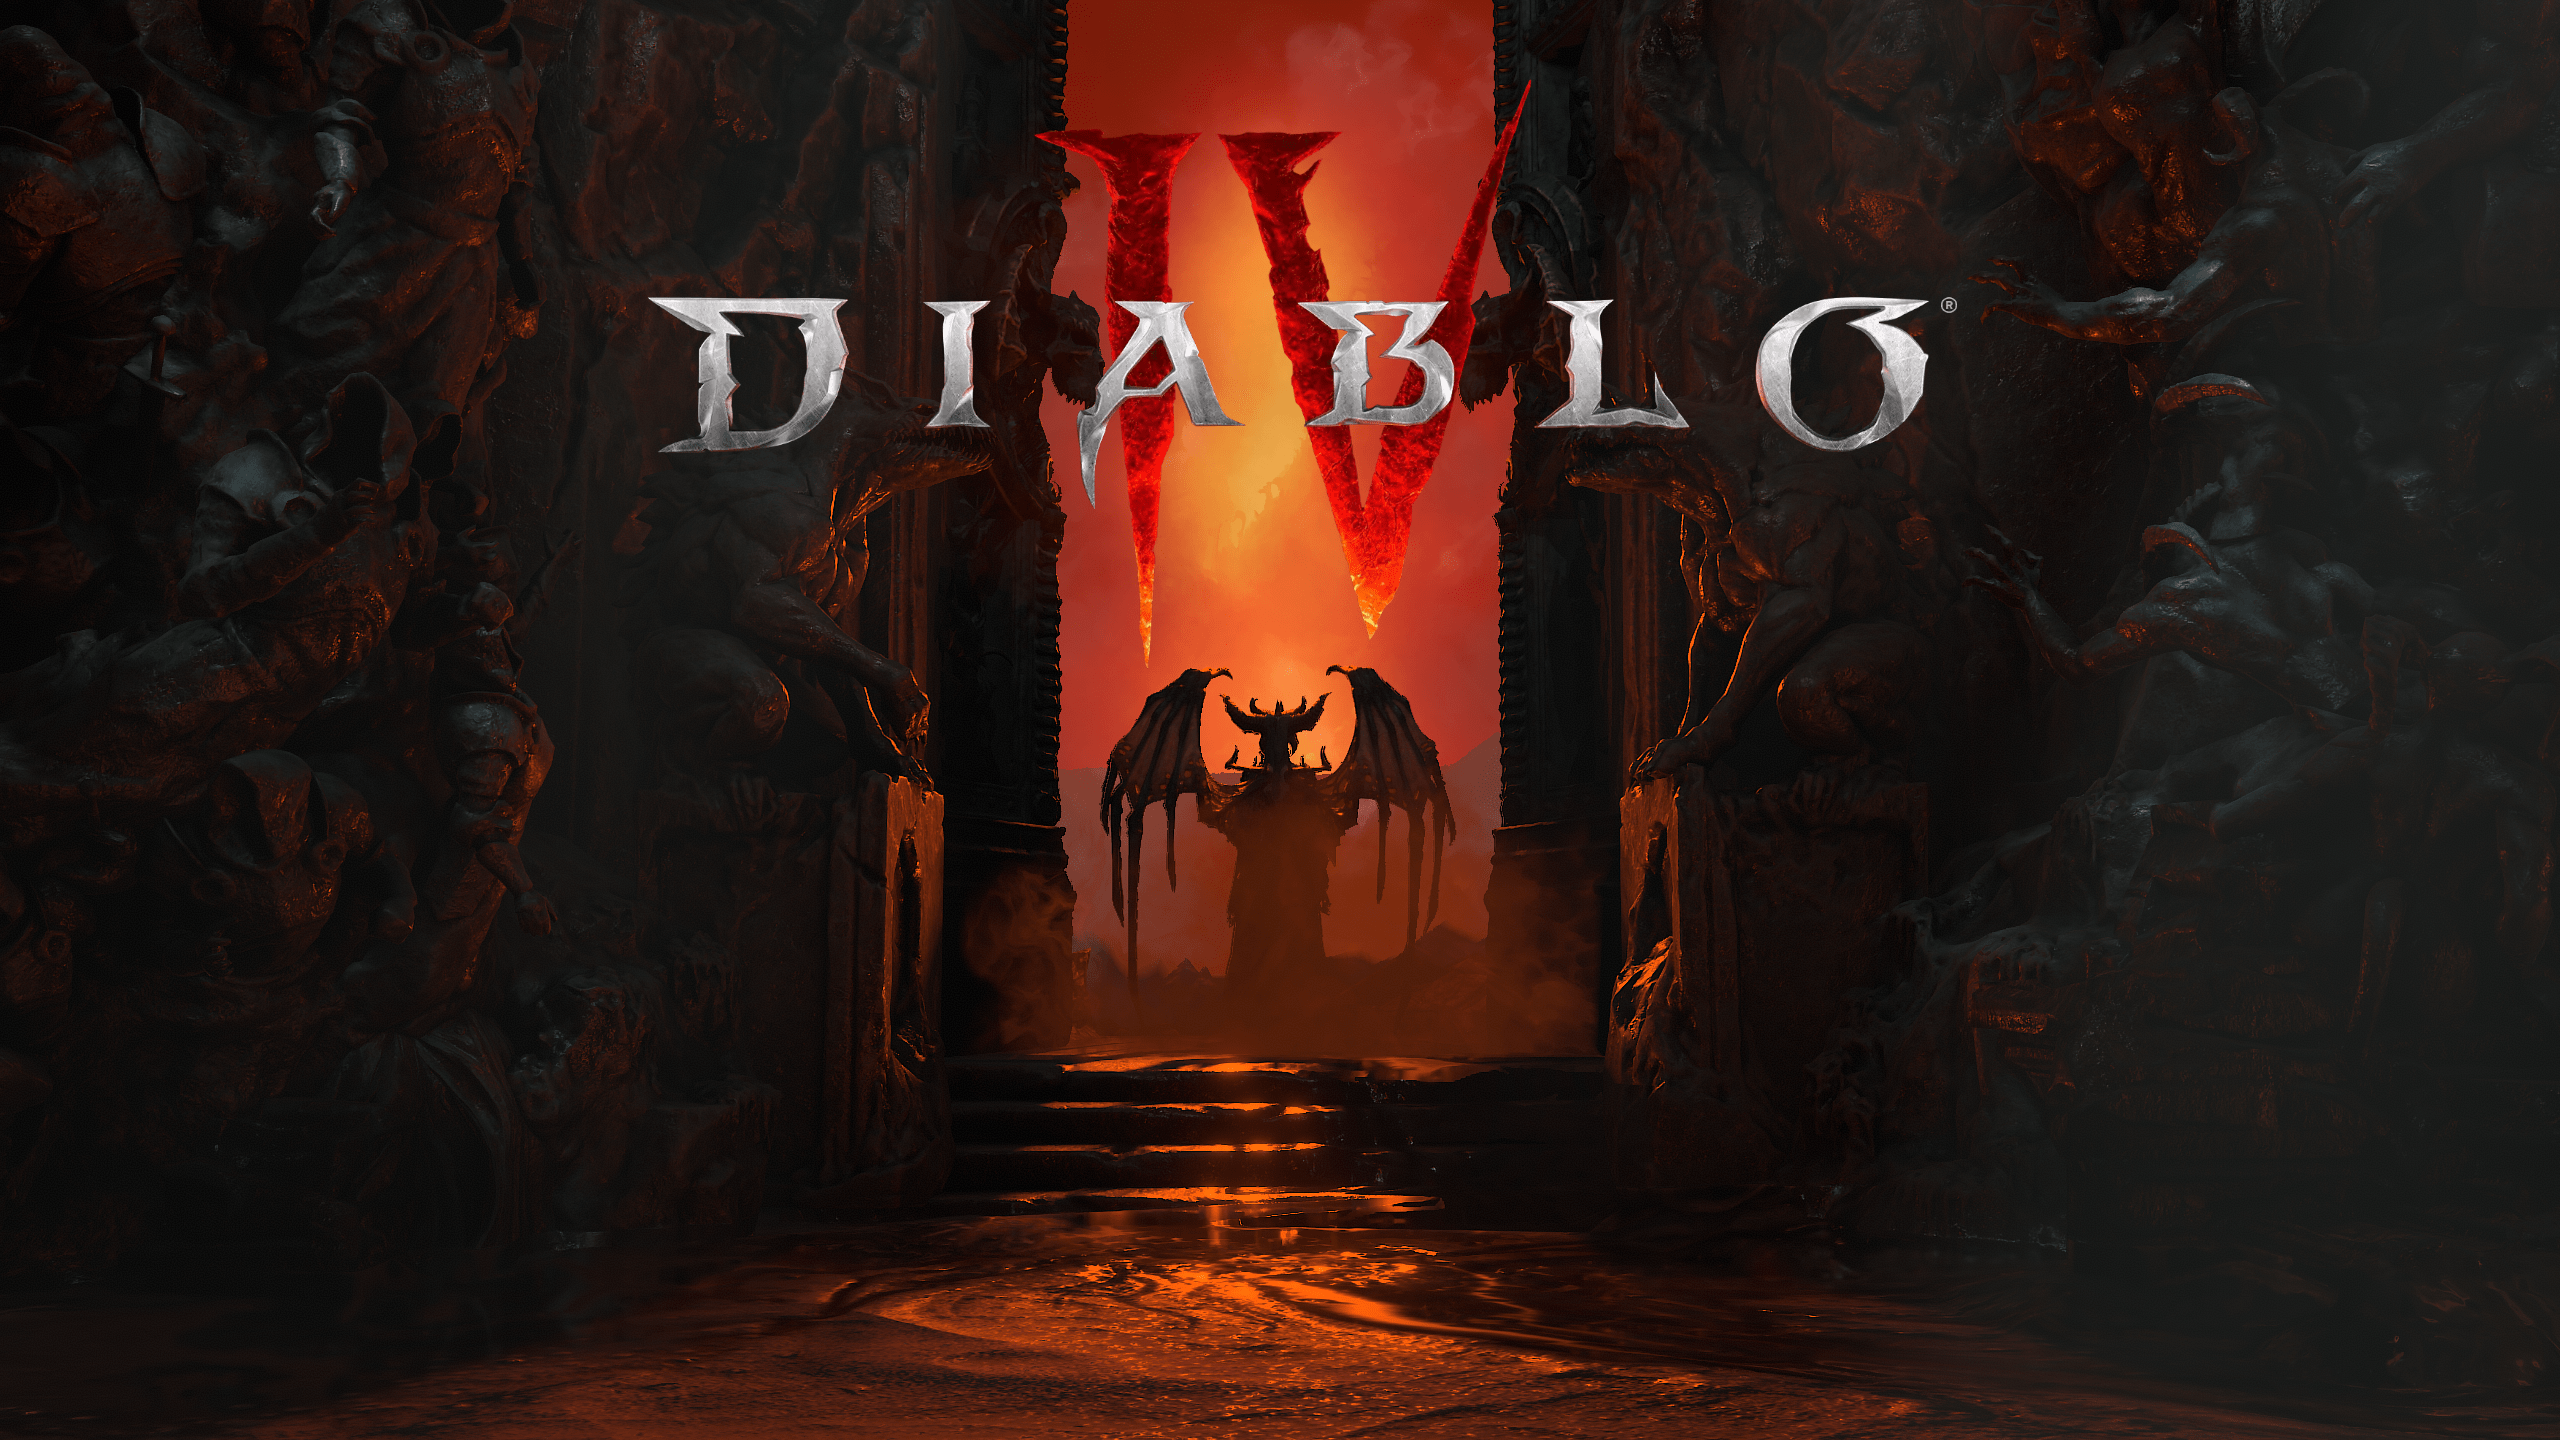 Grafika przedstawia mroczne wejście z płonącym napisem "Diablo 4" na górze, otoczone rzeźbieniami przypominającymi potwory, z postacią o demonicznym wyglądzie w centrum.